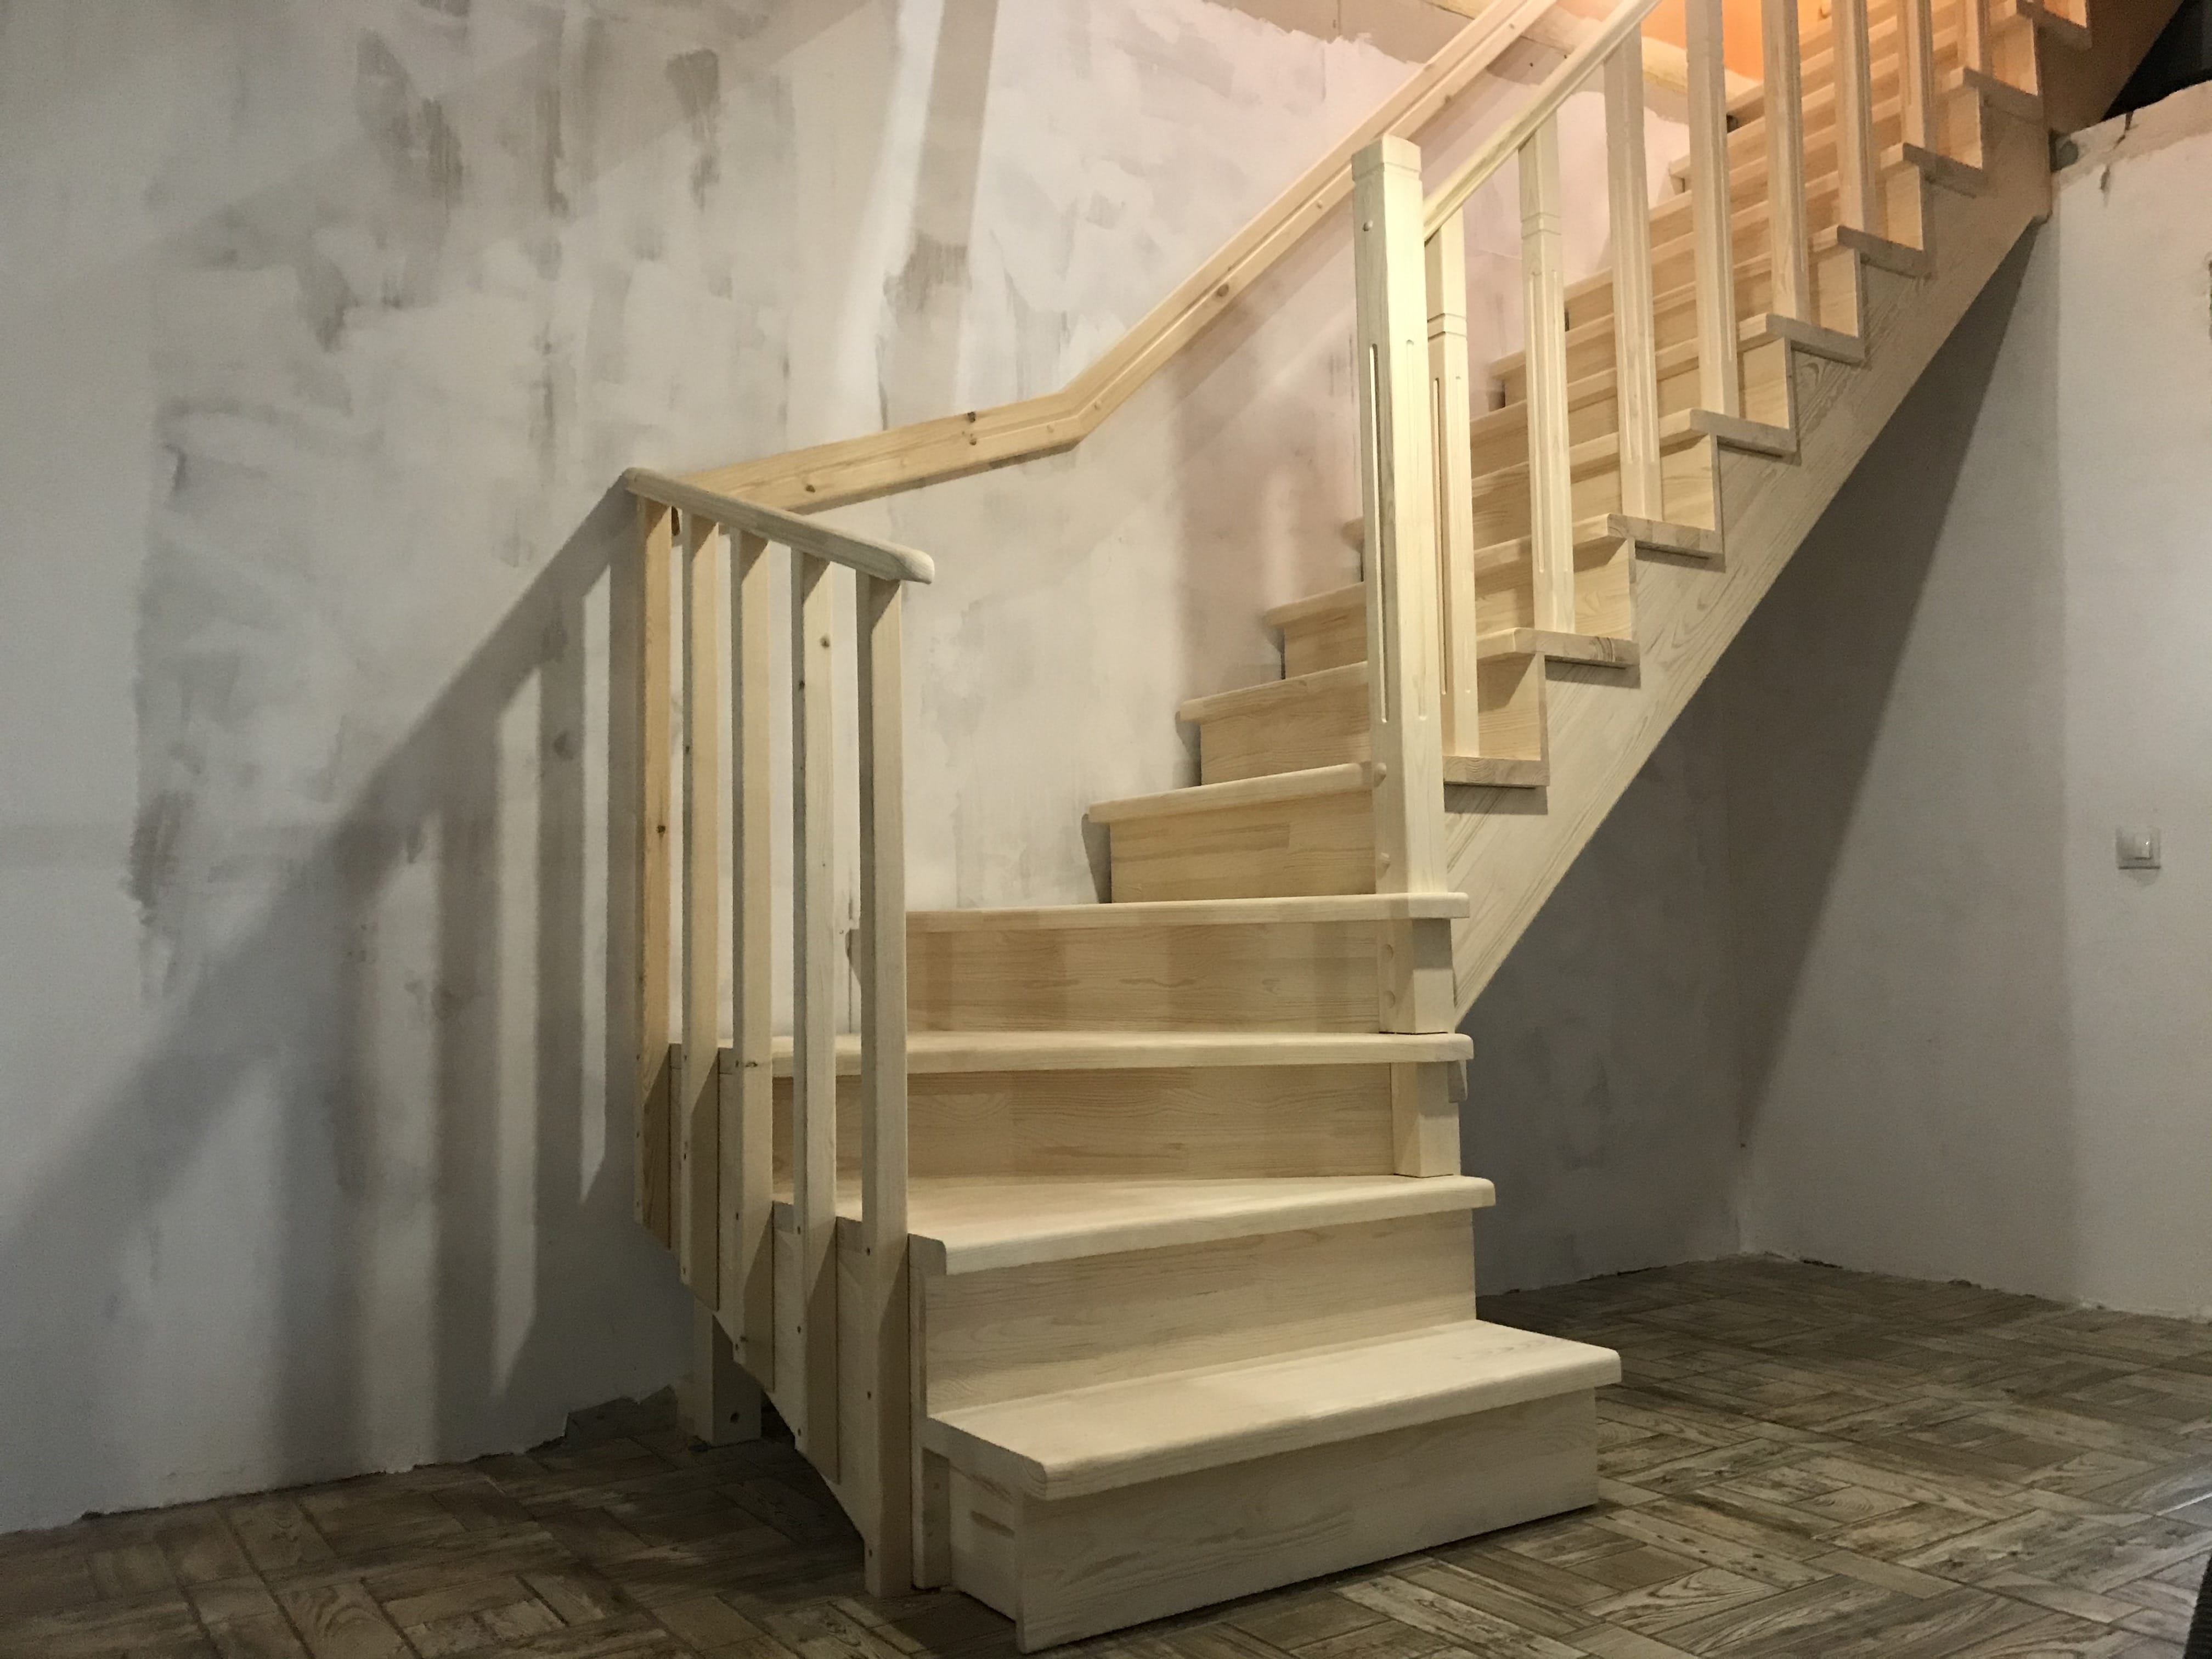 Фото Г - образная деревянная лестница с 3-мя  поворотными ступенями на 90 градусов..